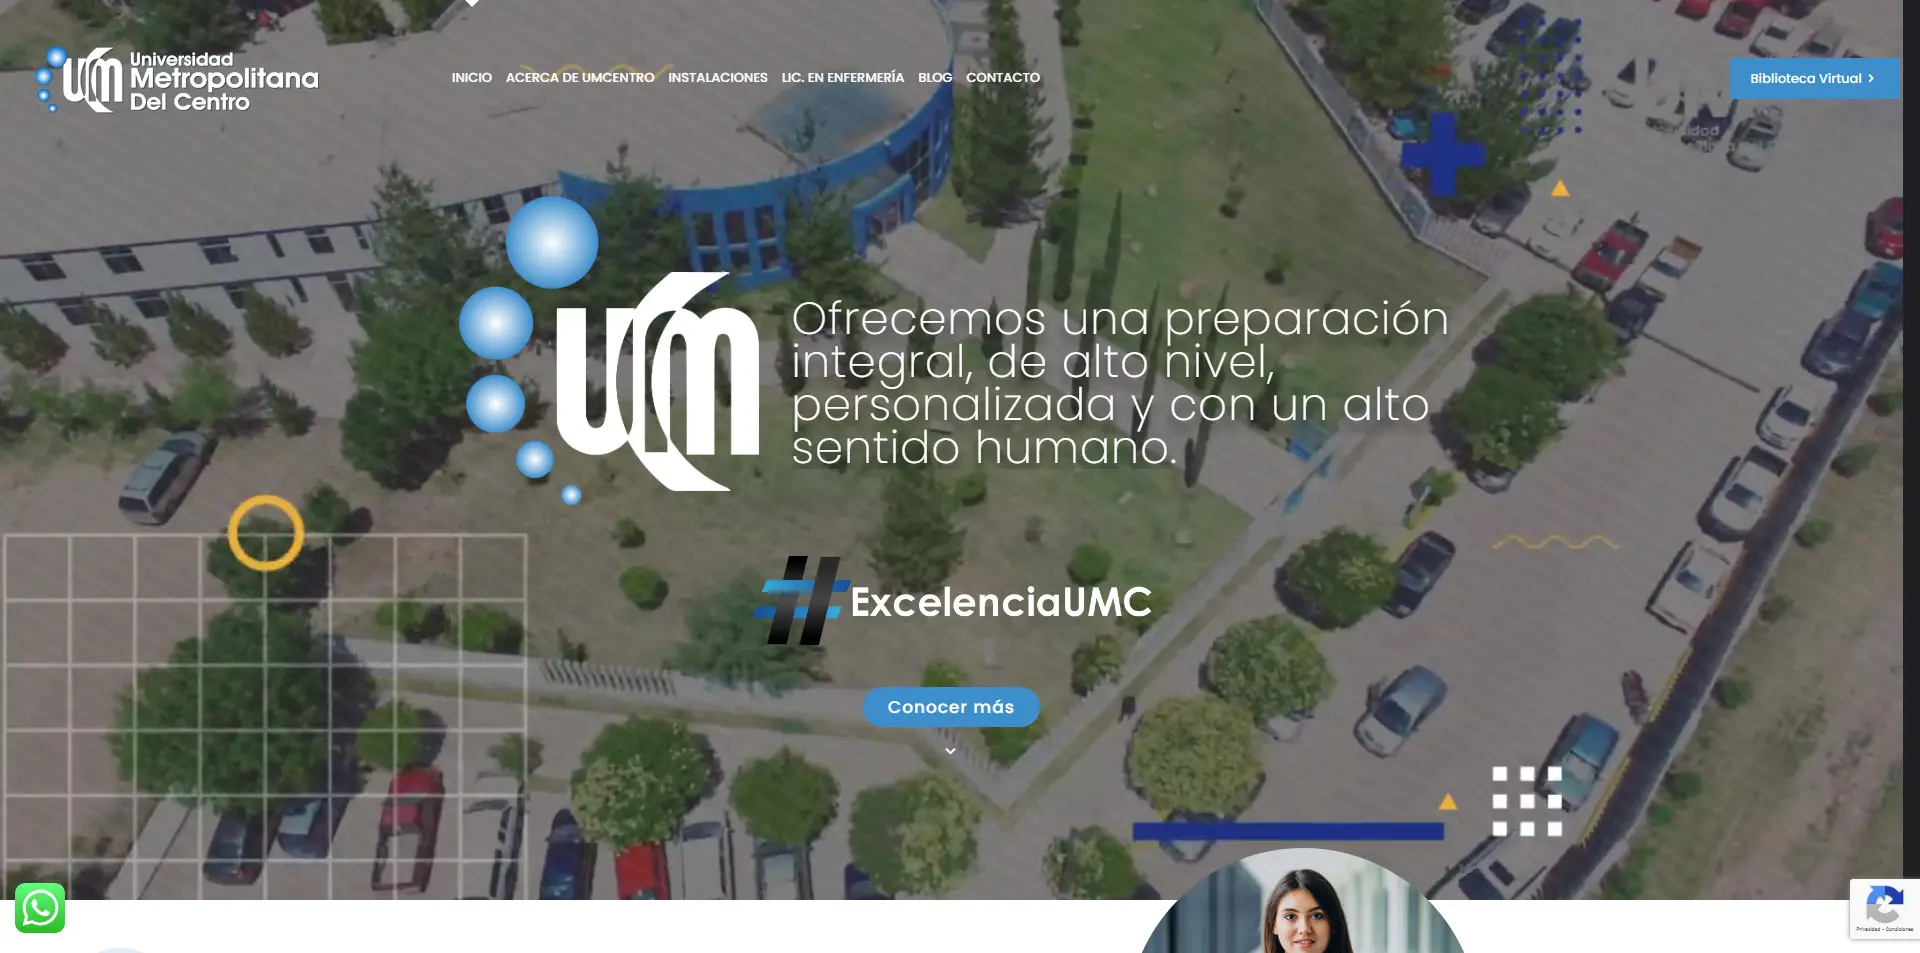 Universidad Metropolitana Del Centro